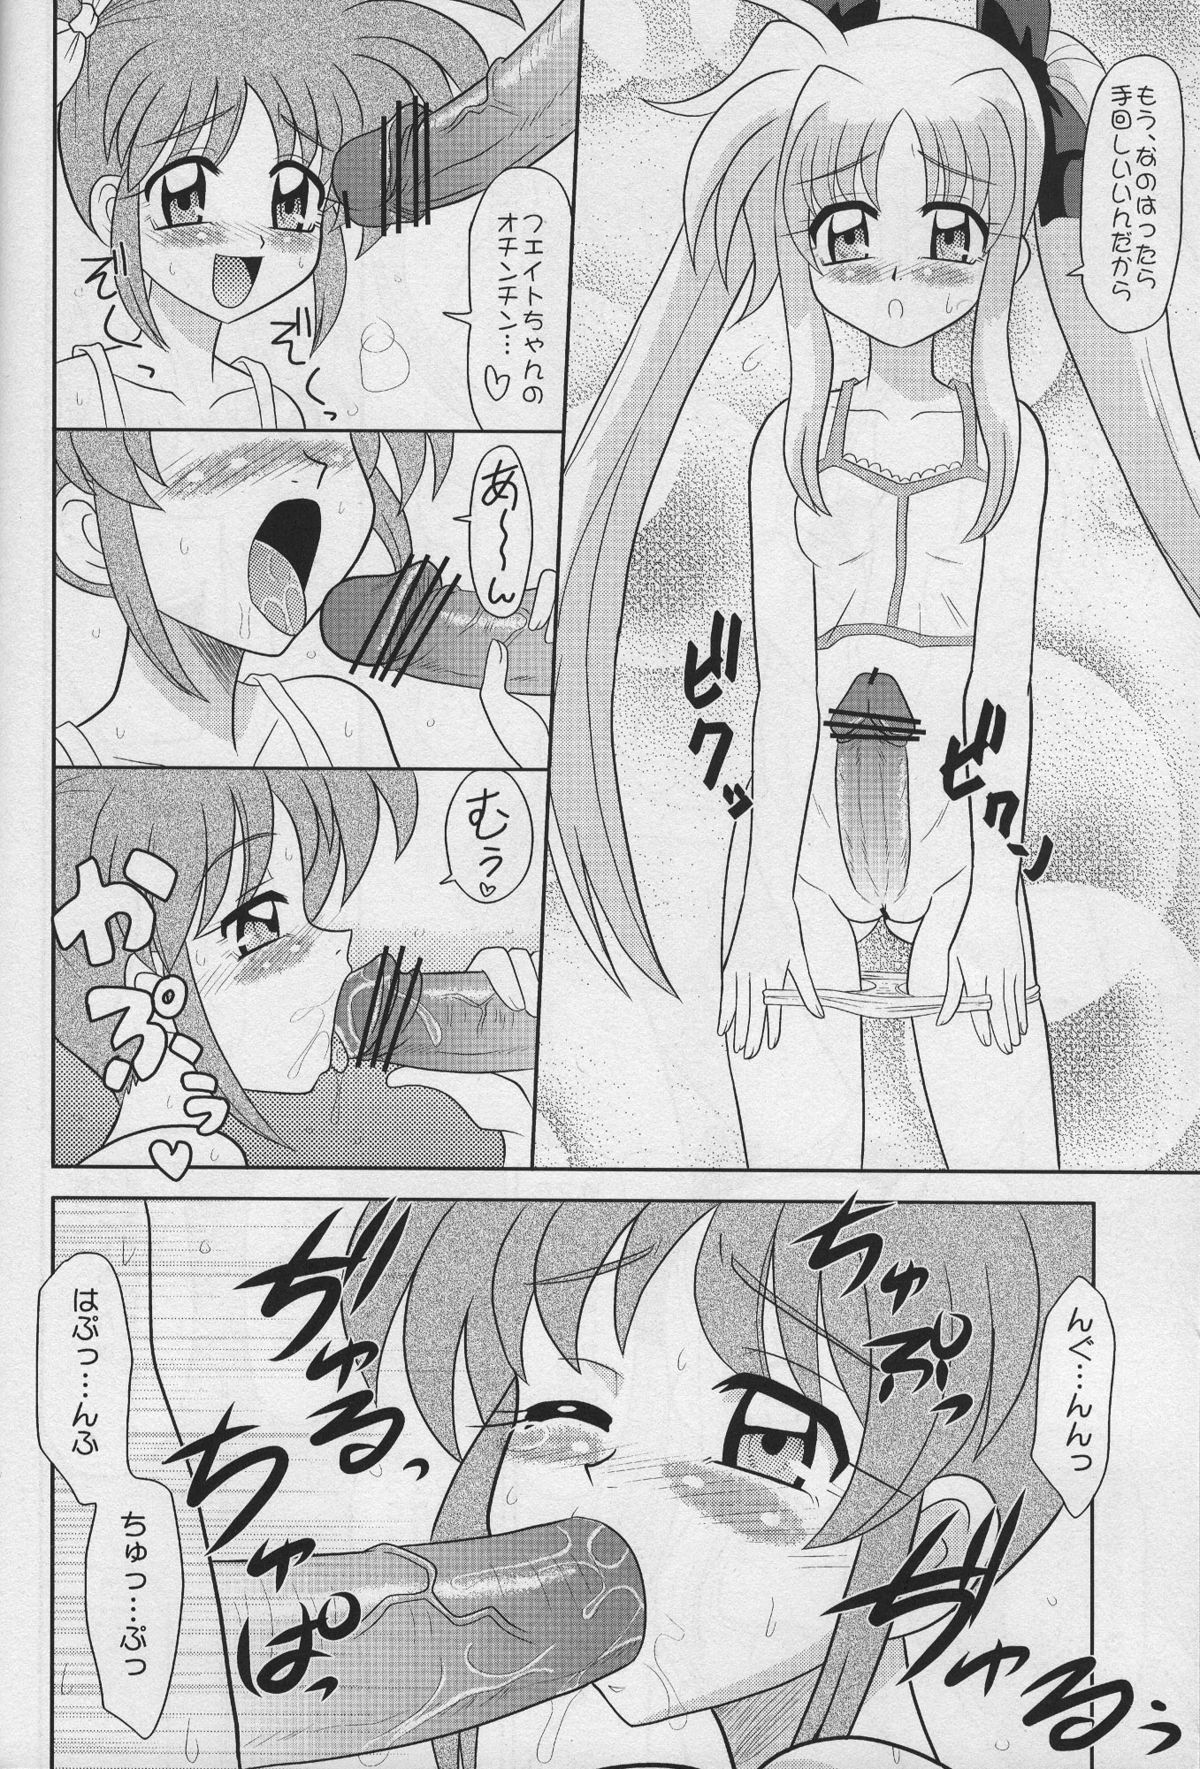 [Mutsuya (Mutsu Nagare)] Sugoi Ikioi 18 (Mahou Shoujo Lyrical Nanoha) page 3 full